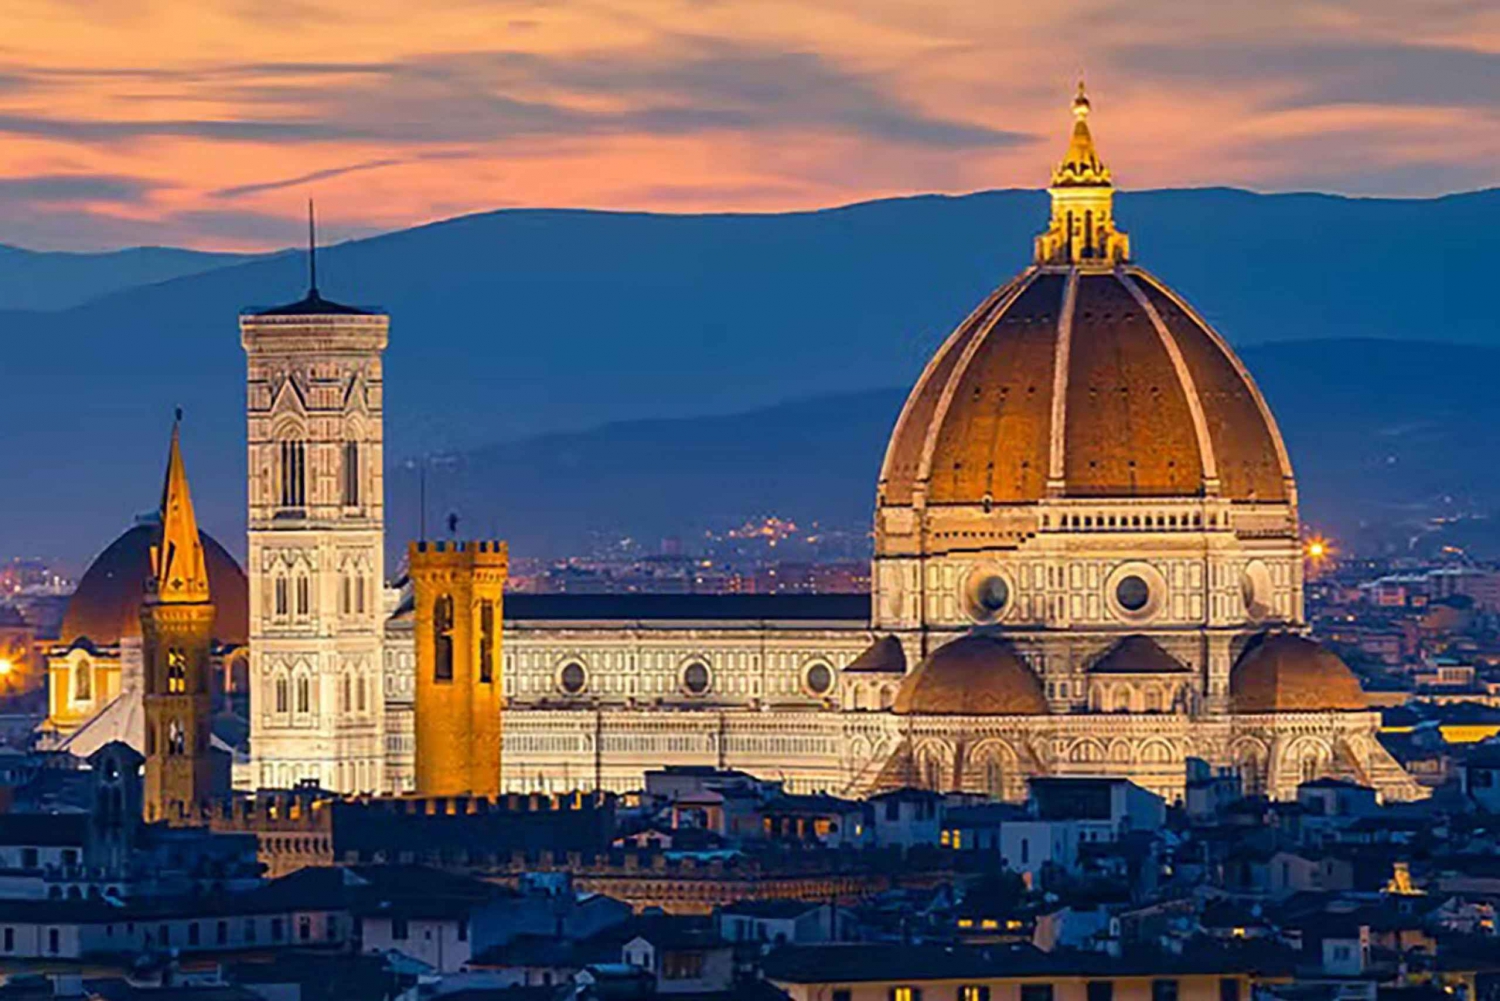 Bezoek de iconische Duomo van Florence